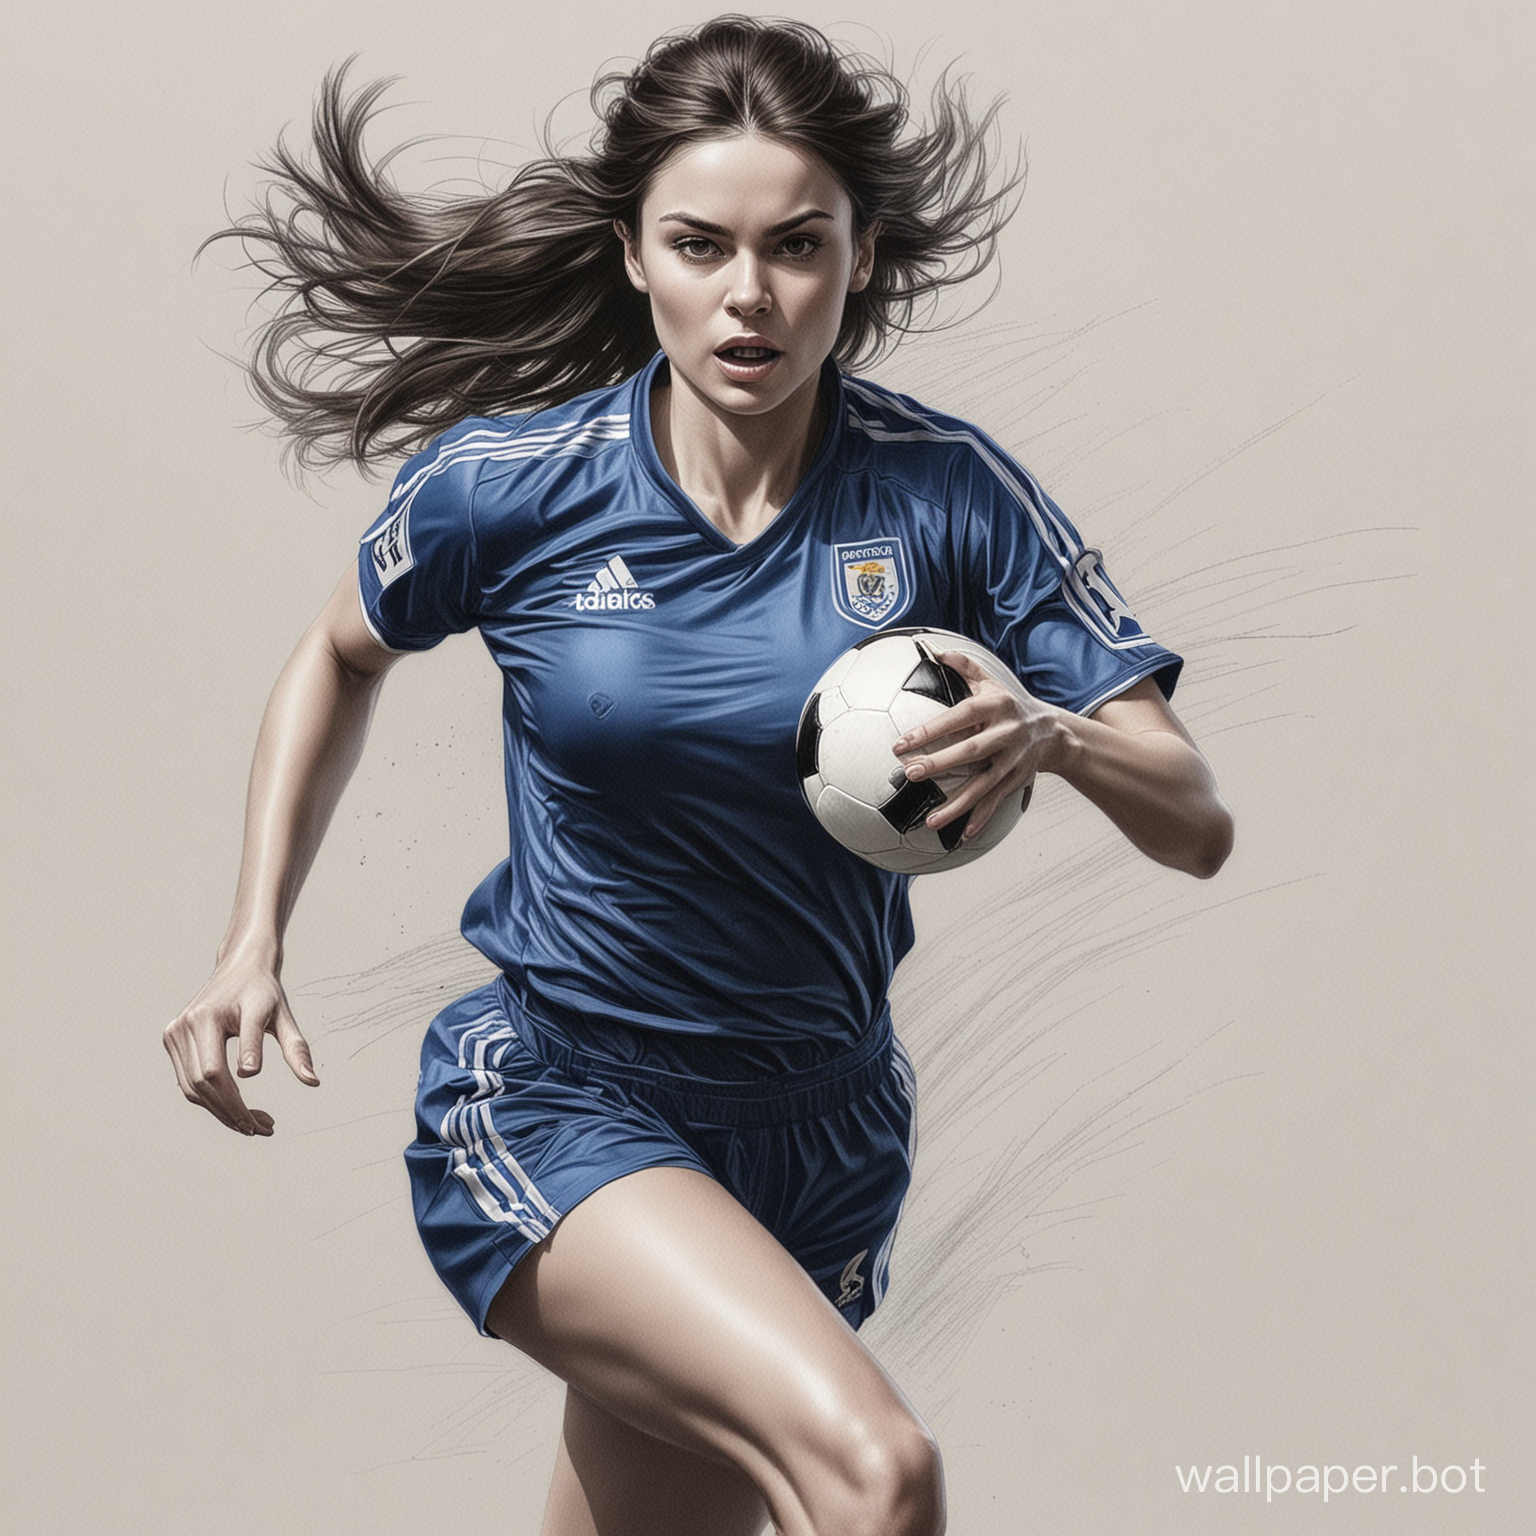 скетч молодая Ирина Спиженкова темные волосы 4 размер груди узкая талия   В   черно-синей футбольной форме  на огромной скорости бежит и бьет по мячу  белый фон высокая реалистичность рисунок карандашом